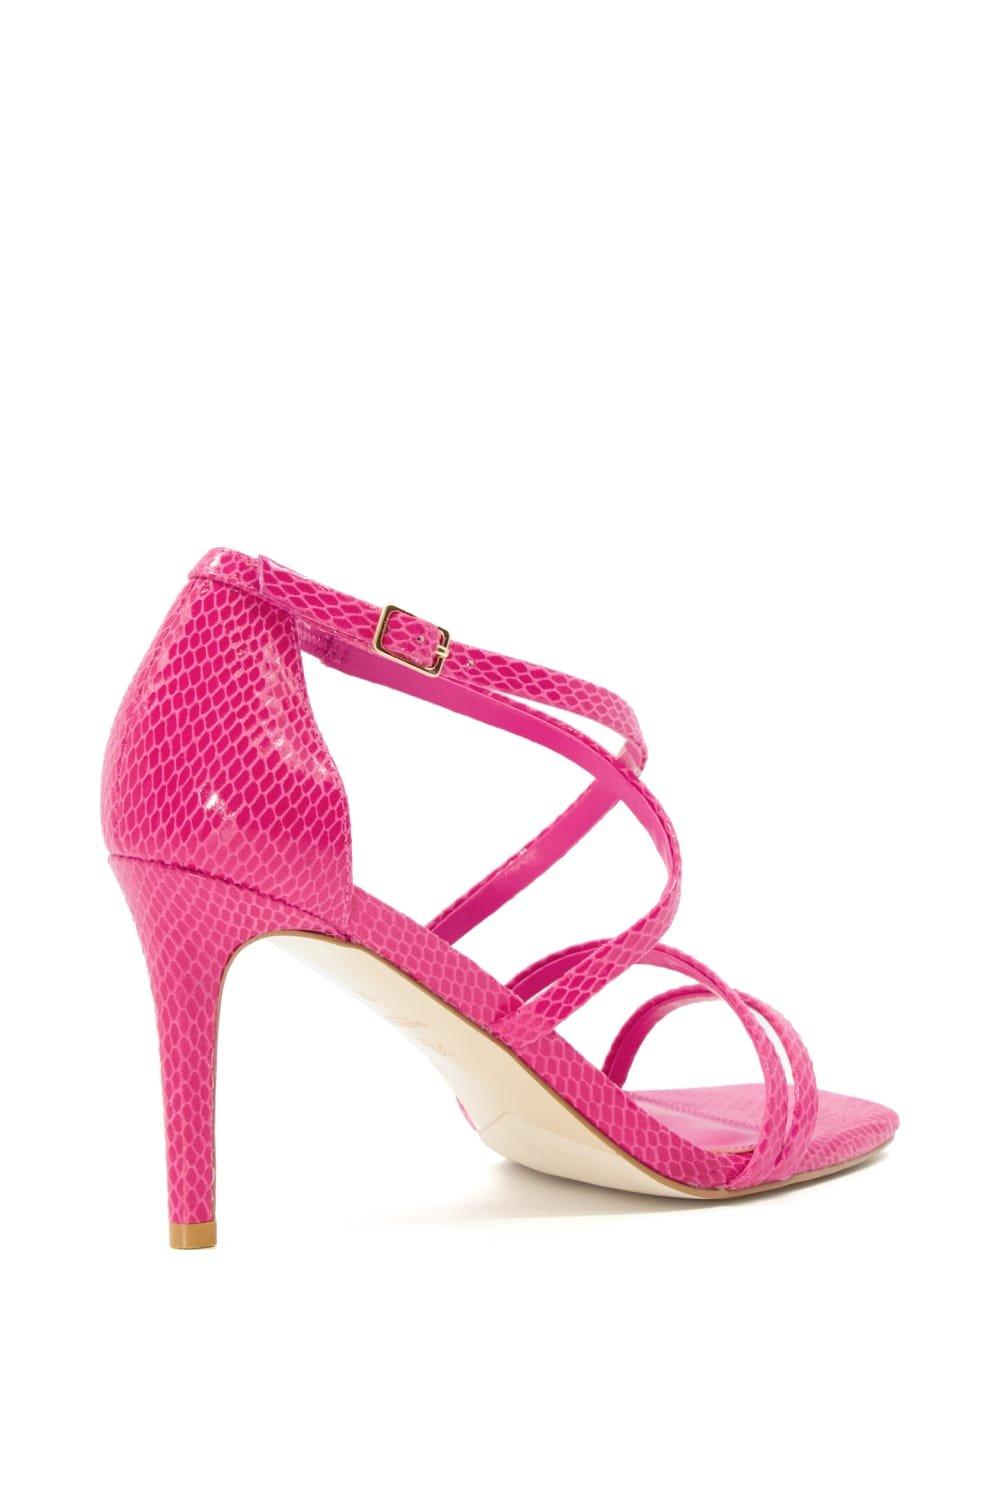 Shop Debenhams Dorothy Perkins Women's Sandals up to 90% Off | DealDoodle